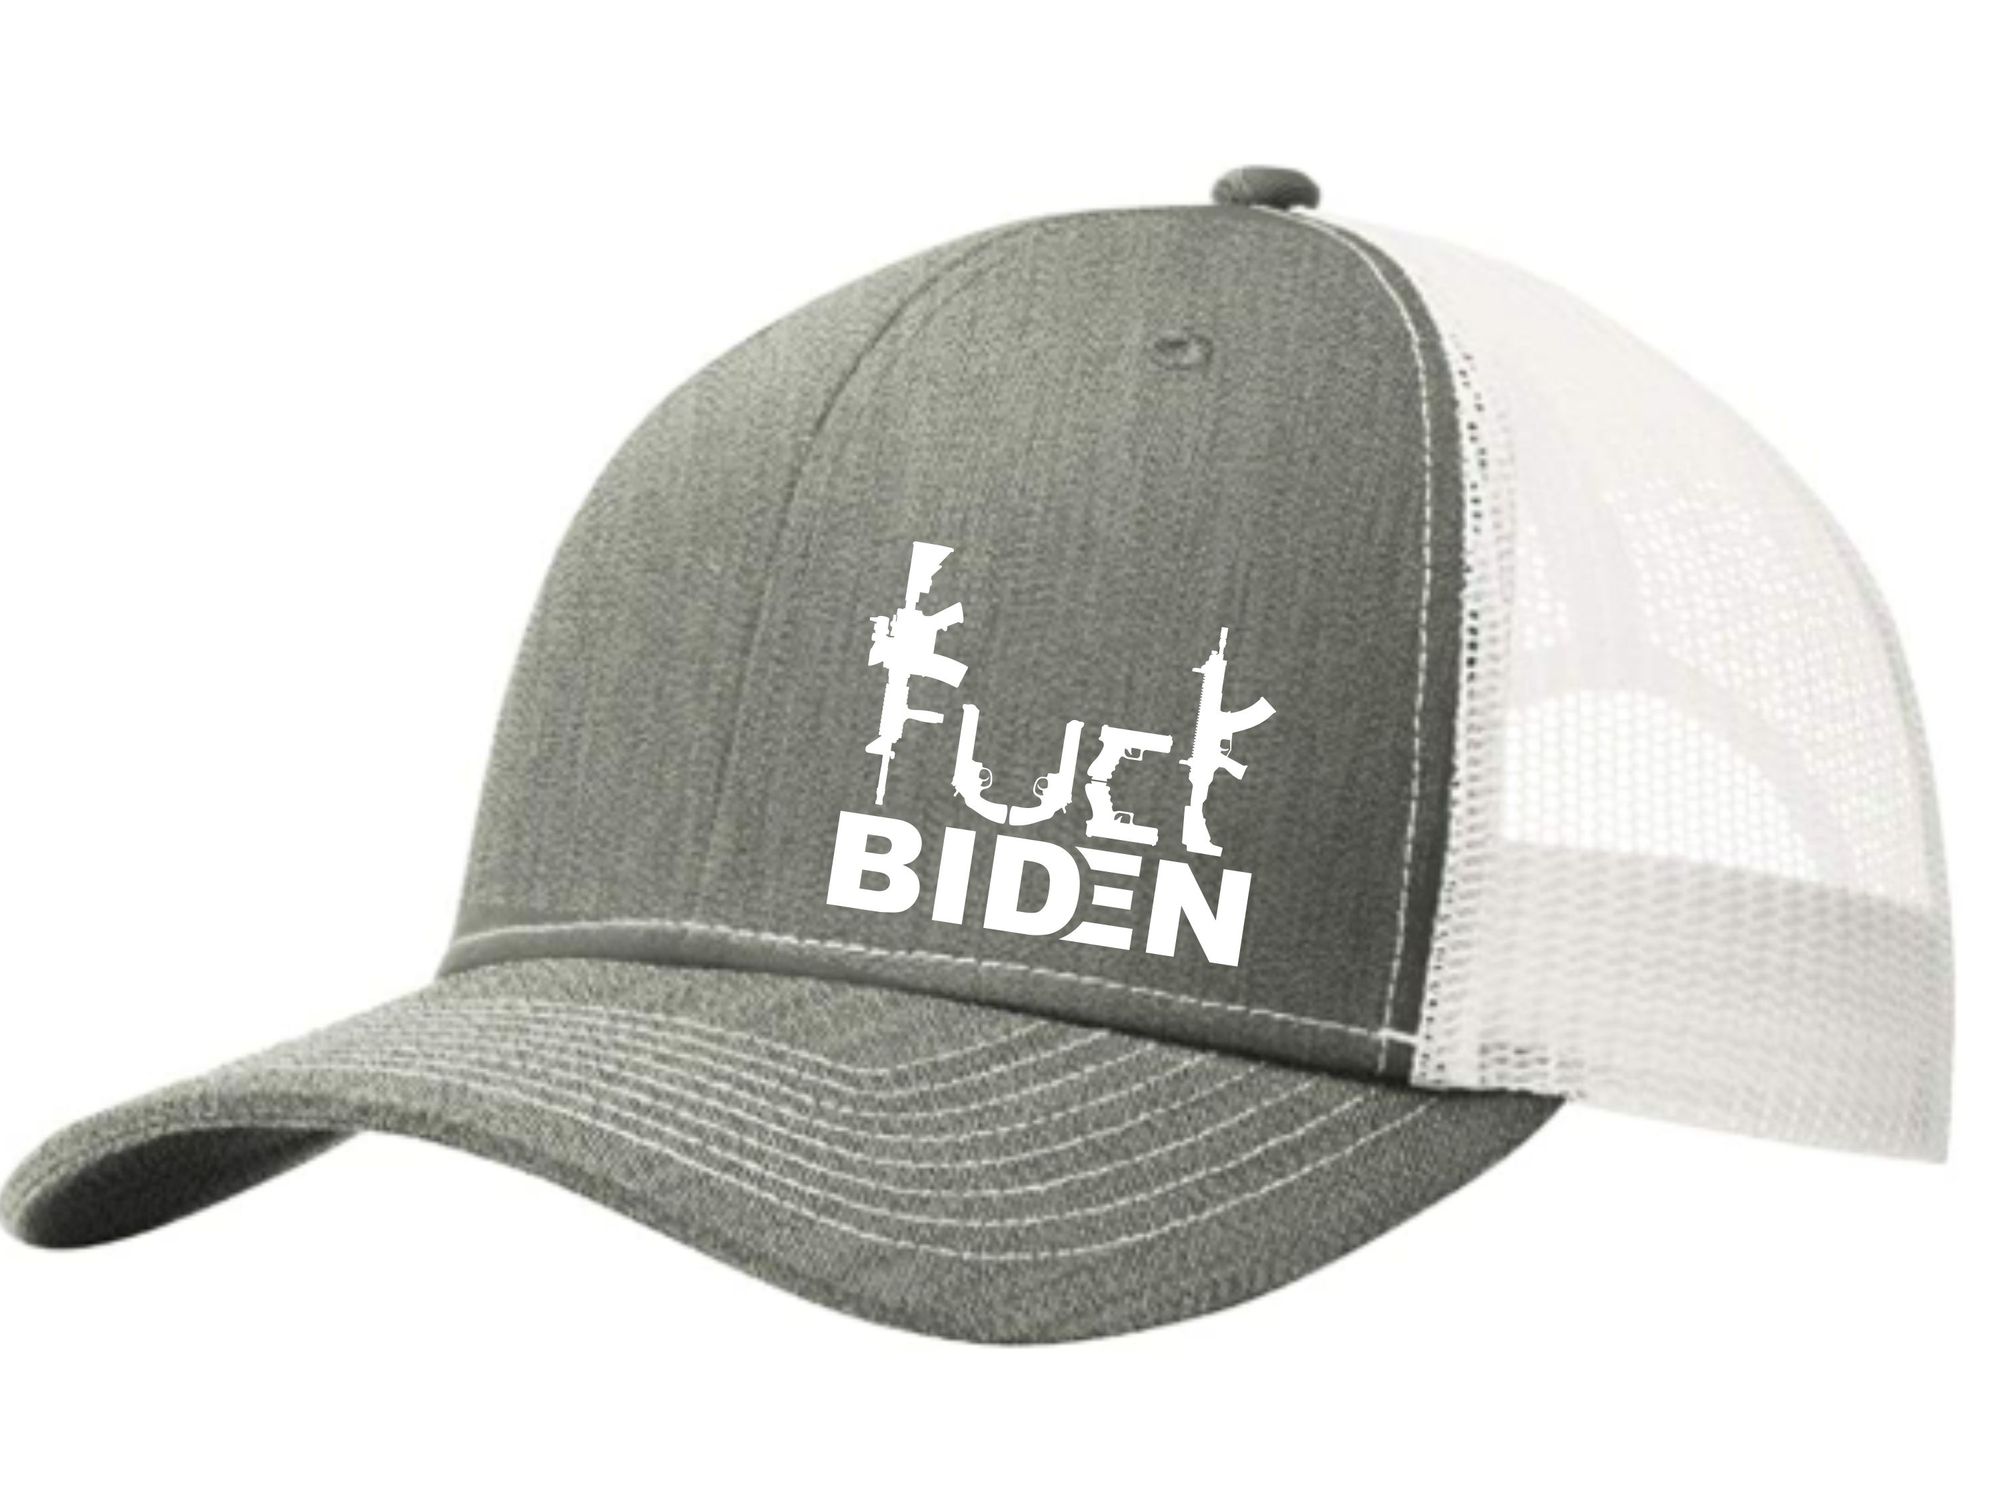 Guns Fuck Biden trucker cap 3